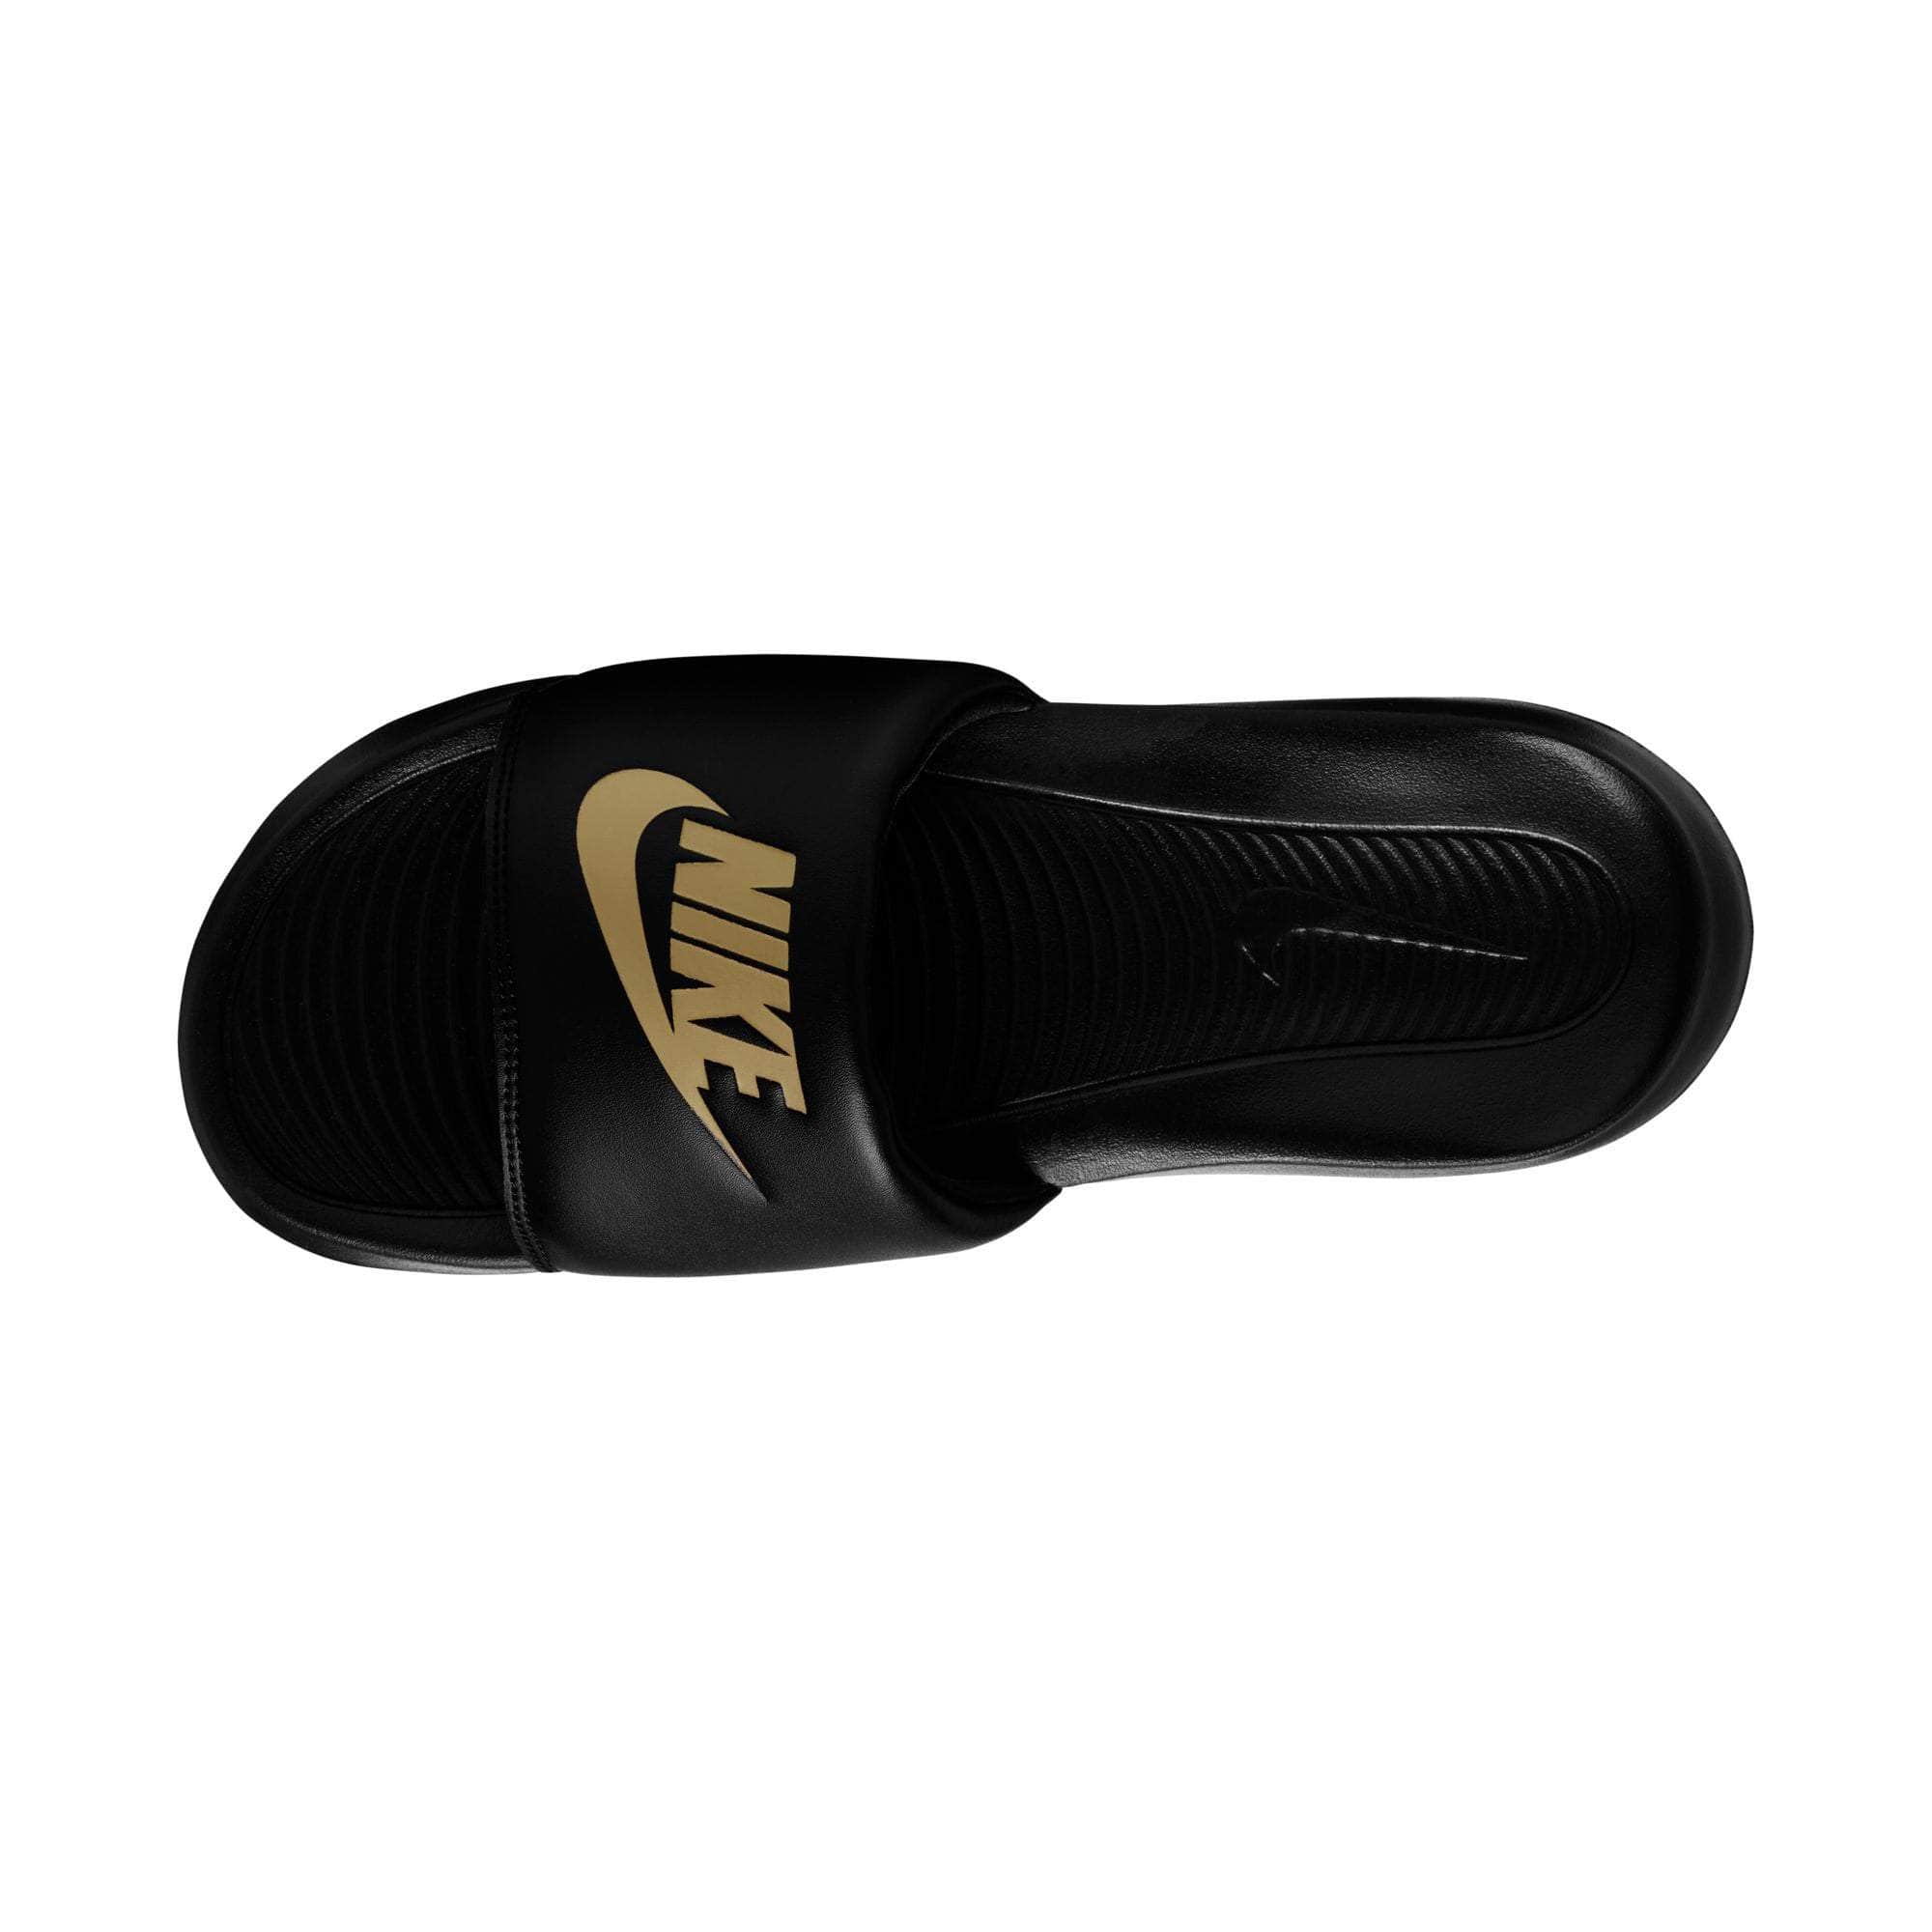 NIIKE FOOTWEAR Nike Victori One Slides - Men's